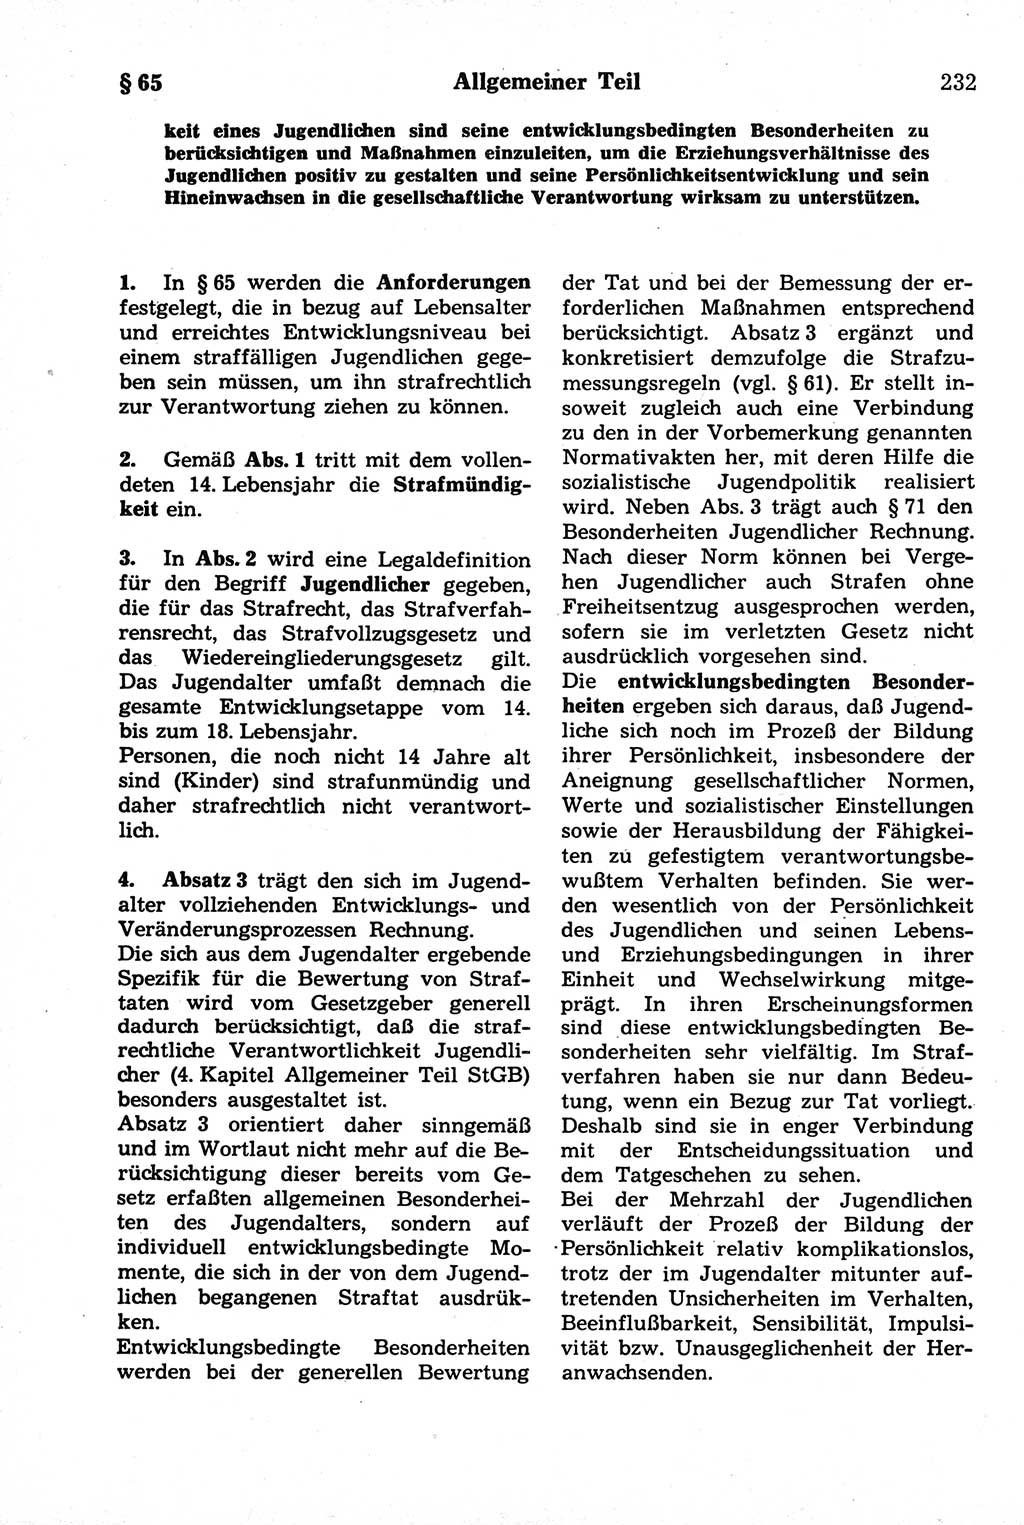 Strafrecht der Deutschen Demokratischen Republik (DDR), Kommentar zum Strafgesetzbuch (StGB) 1981, Seite 232 (Strafr. DDR Komm. StGB 1981, S. 232)